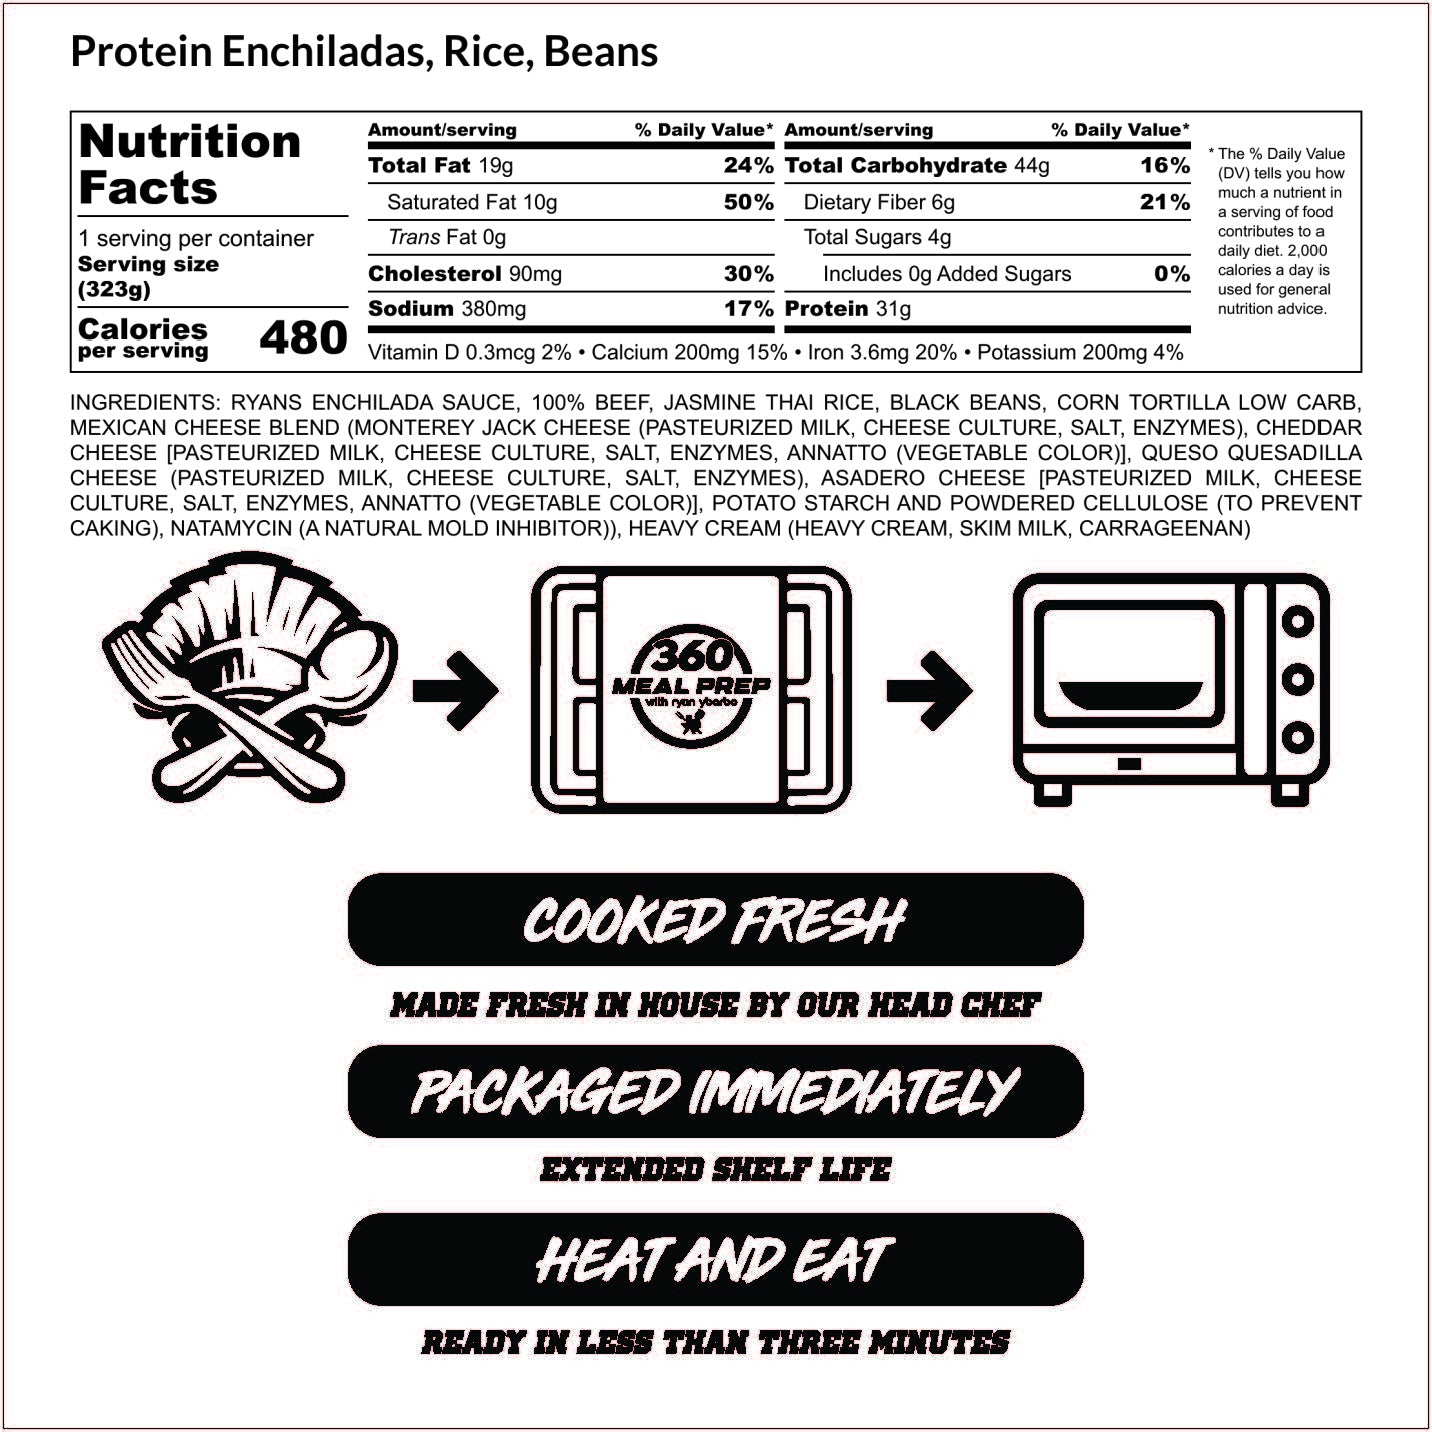 Protein Enchiladas, Rice, & Beans